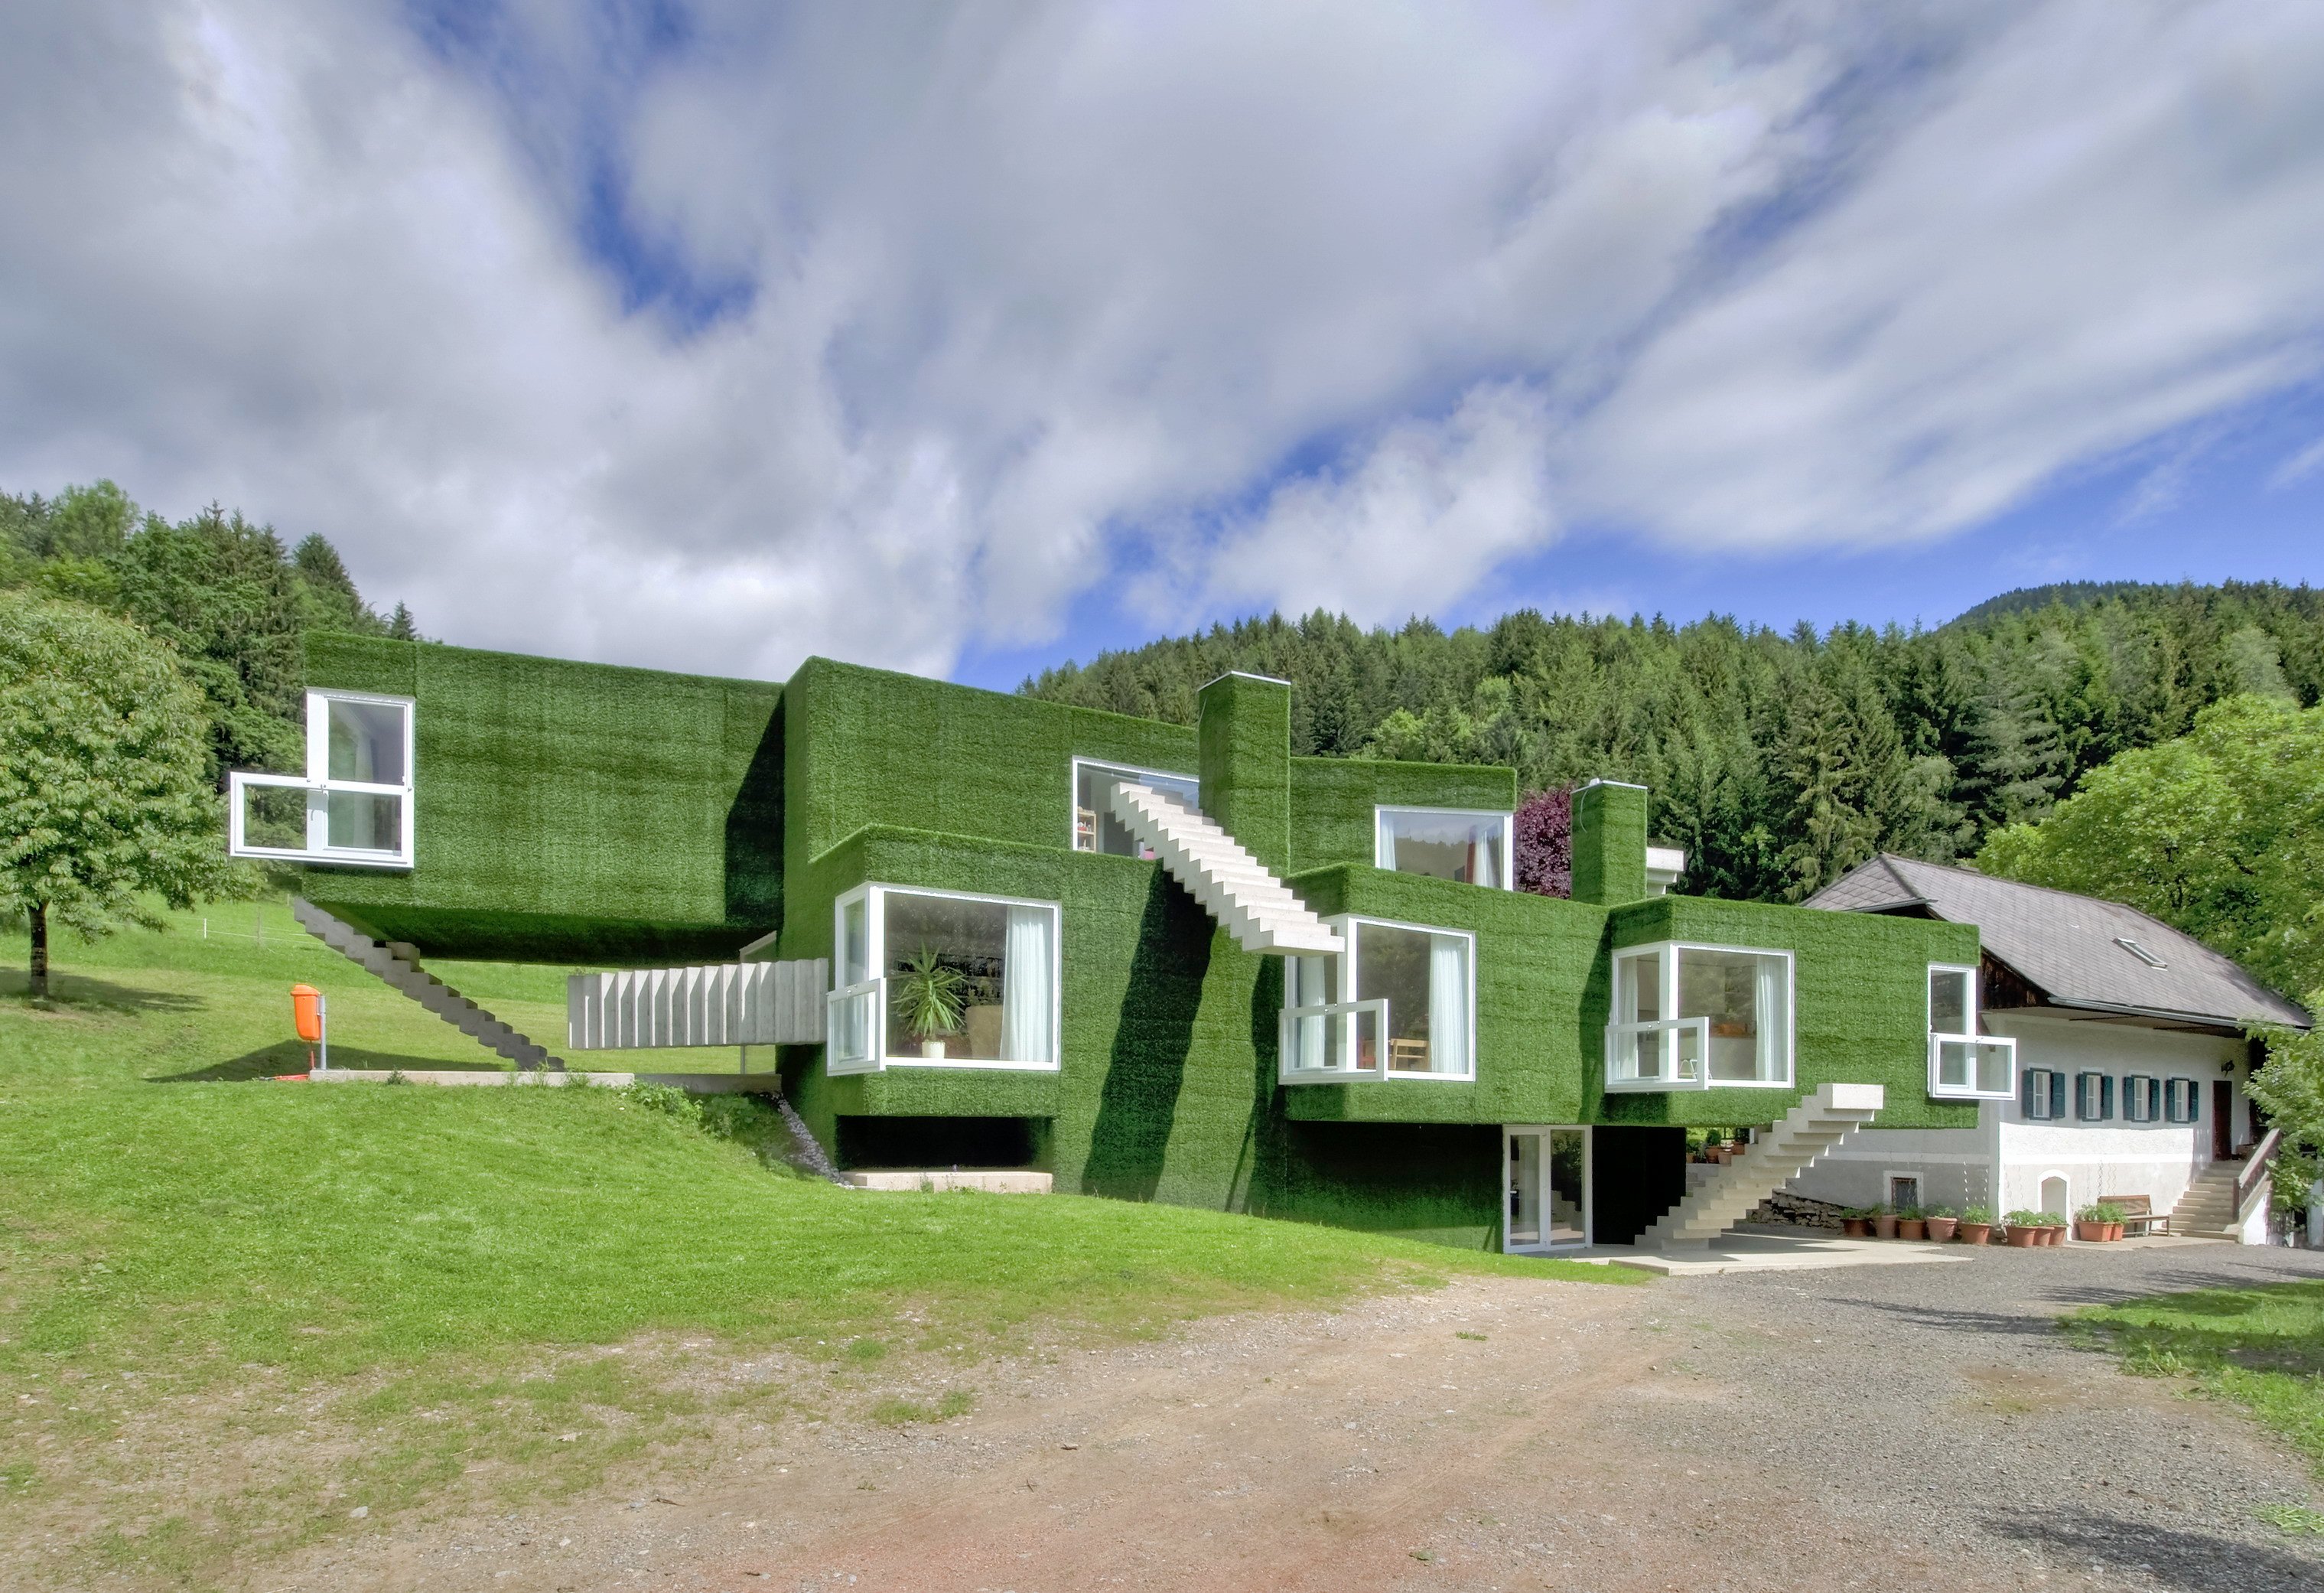 Зеленый дом. «Зеленый дом» («Green building»). ЭКОДОМ зеленый дом. Зеленый эко дом в Австралии. Экодома зеленая архитектура.